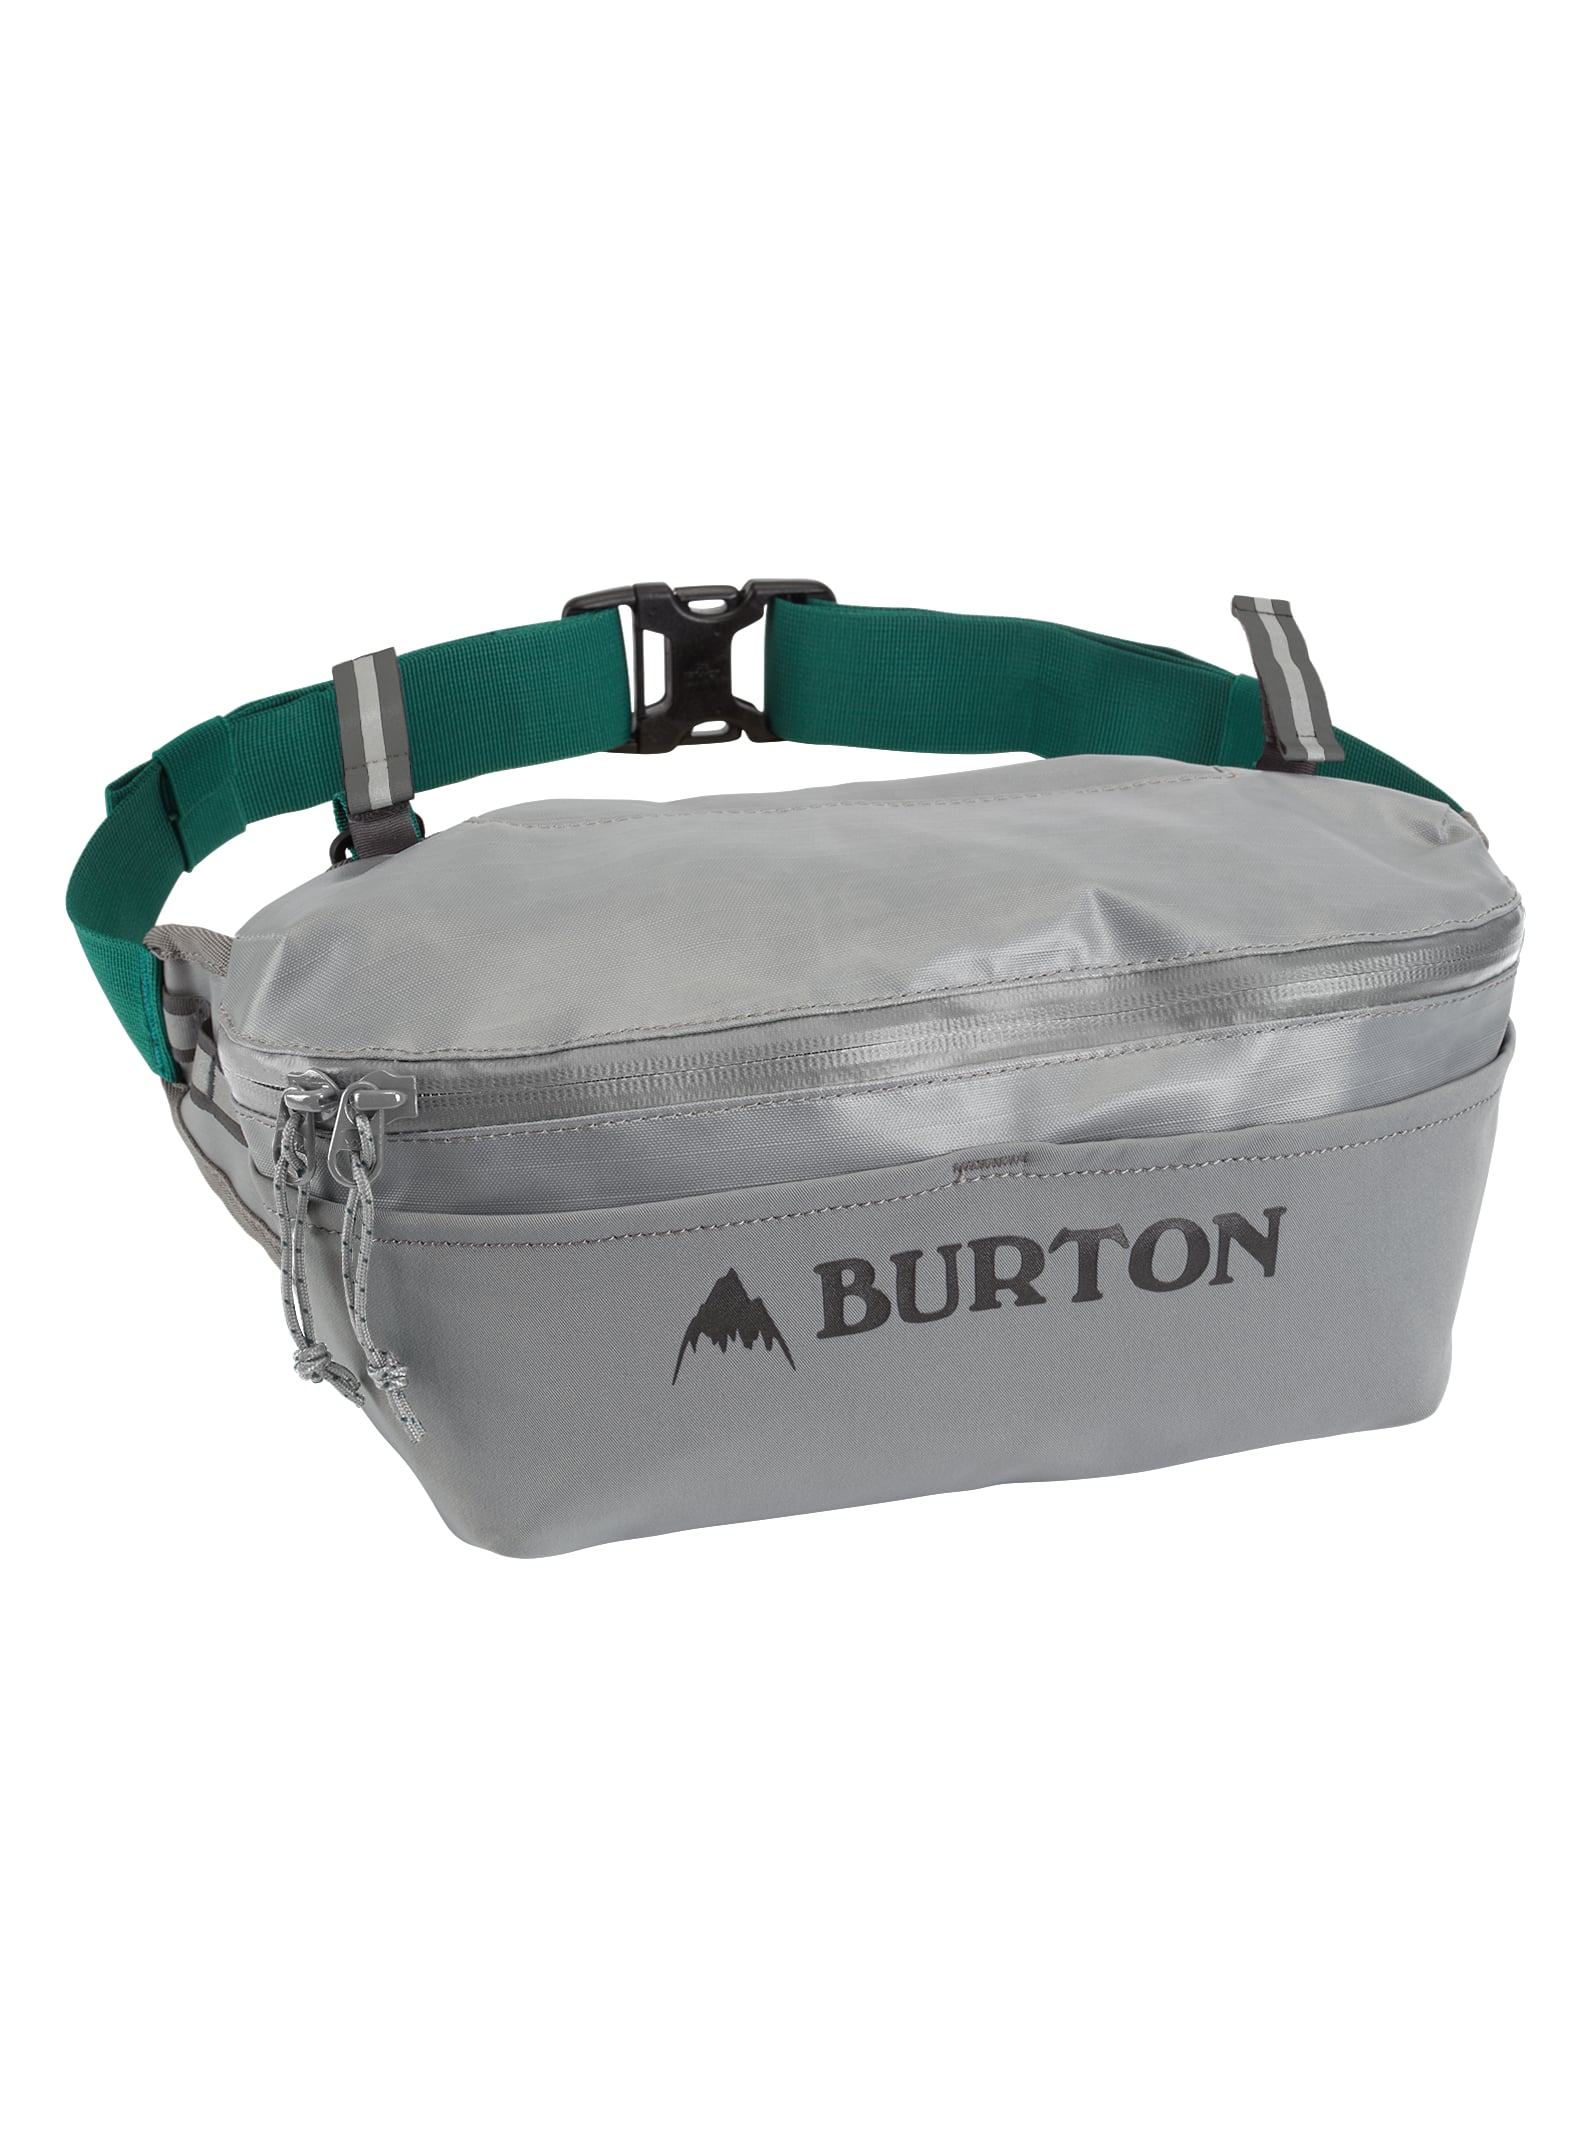 Burton - Trousse de toilette Multipath 5 L | Burton.com Printemps 2021 FR